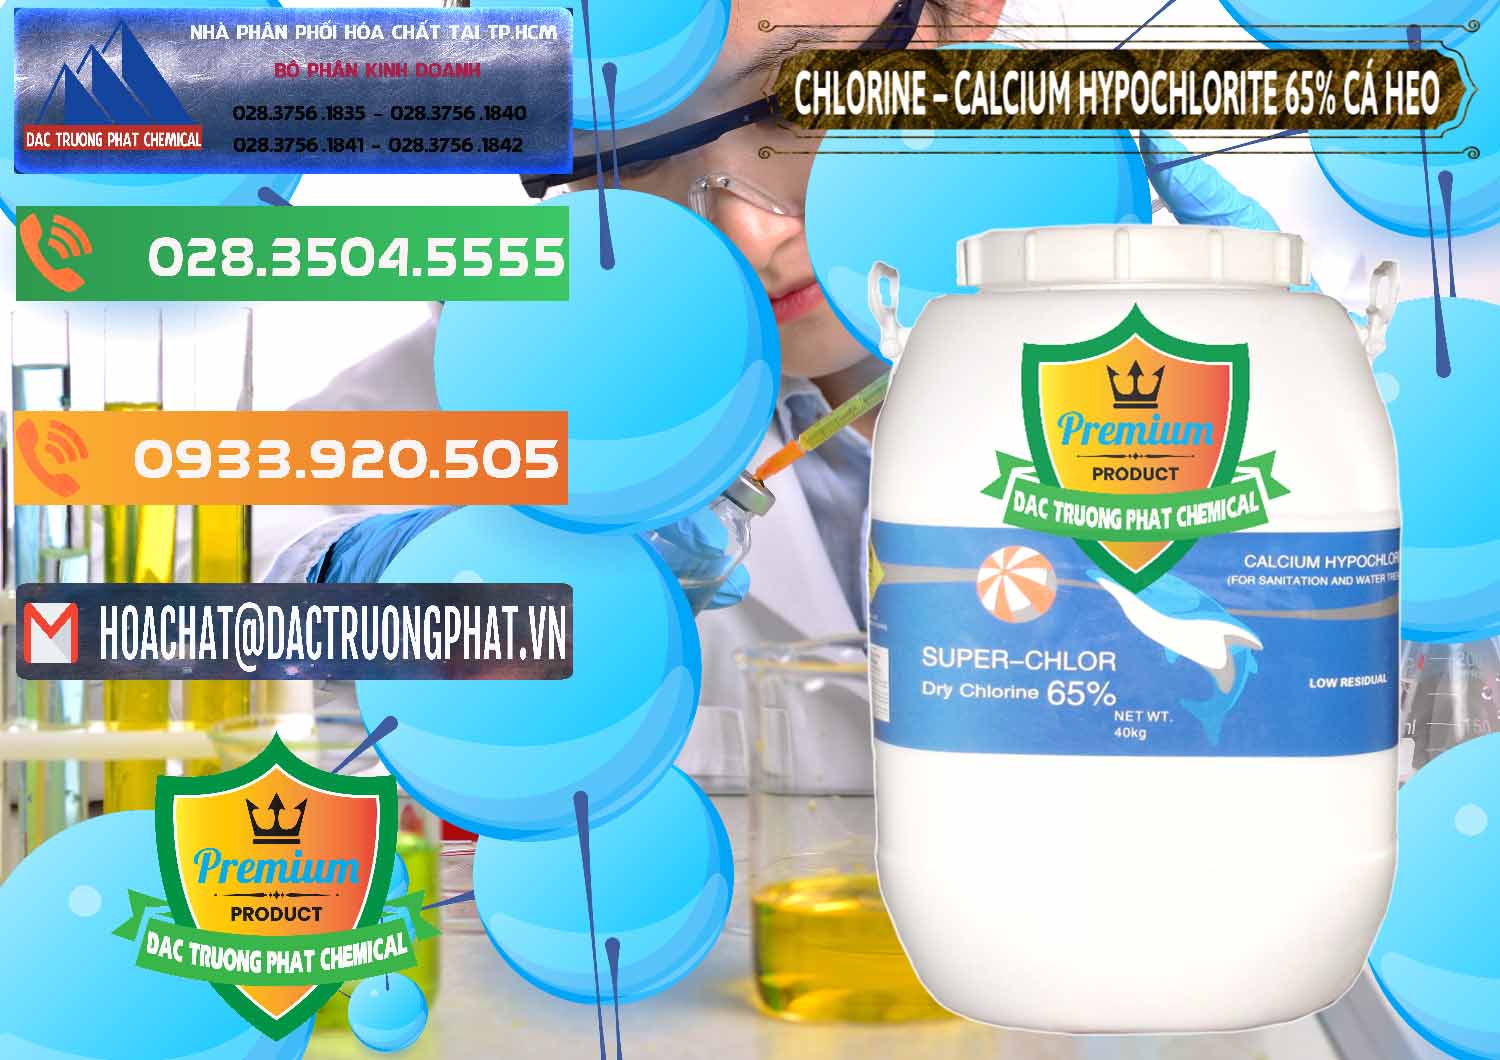 Công ty nhập khẩu ( bán ) Clorin - Chlorine Cá Heo 65% Trung Quốc China - 0053 - Cty phân phối - cung cấp hóa chất tại TP.HCM - hoachatxulynuoc.com.vn